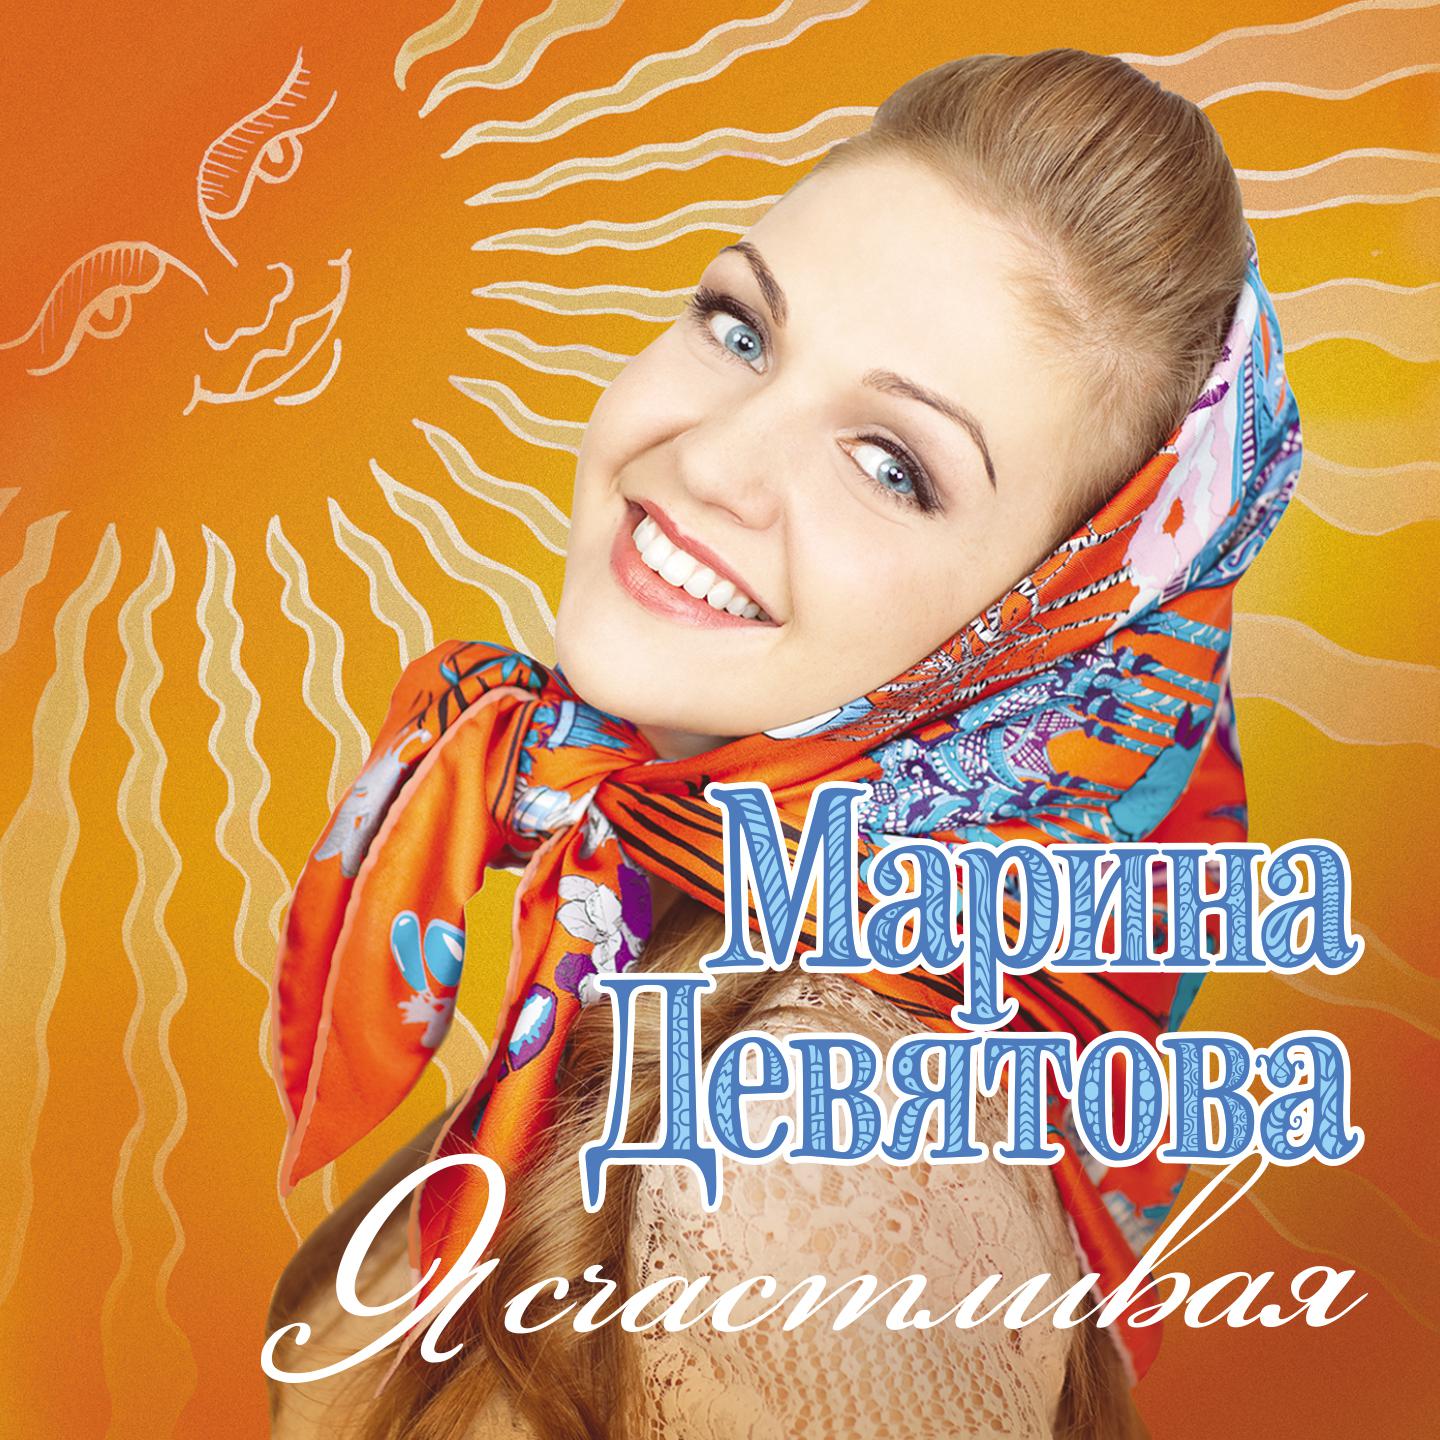 Слушать песню самая лучшая женщина. Марины Девятовой - я счастливая (2011).